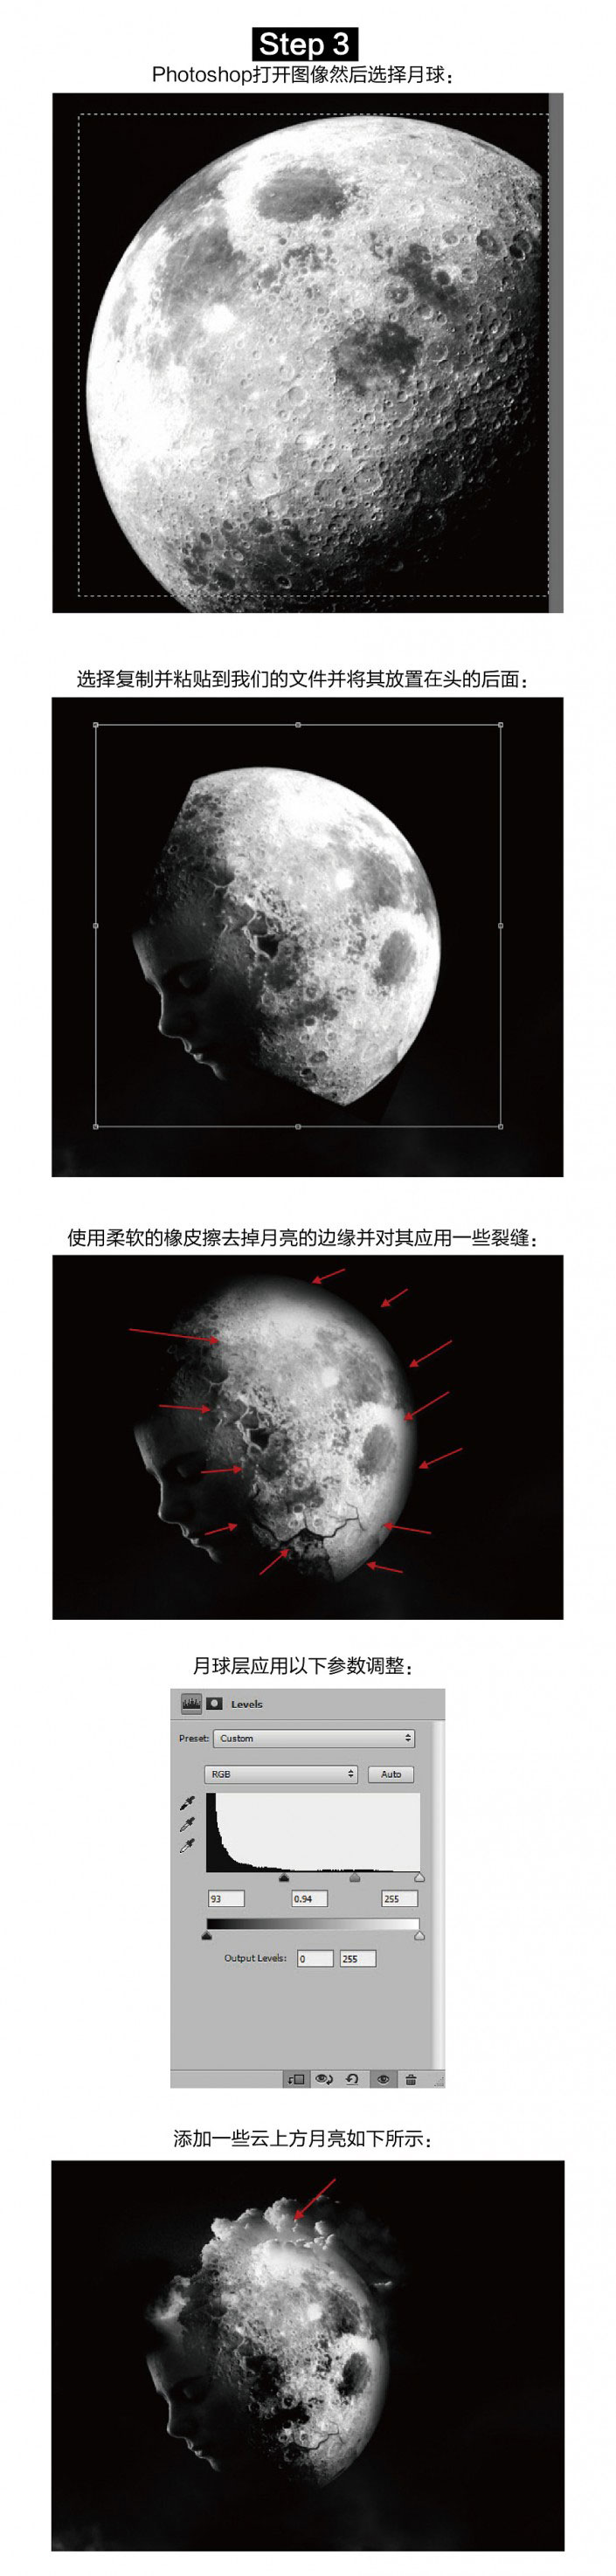 海报制作，用Photoshop制作具有冲击力的月球人脸海报